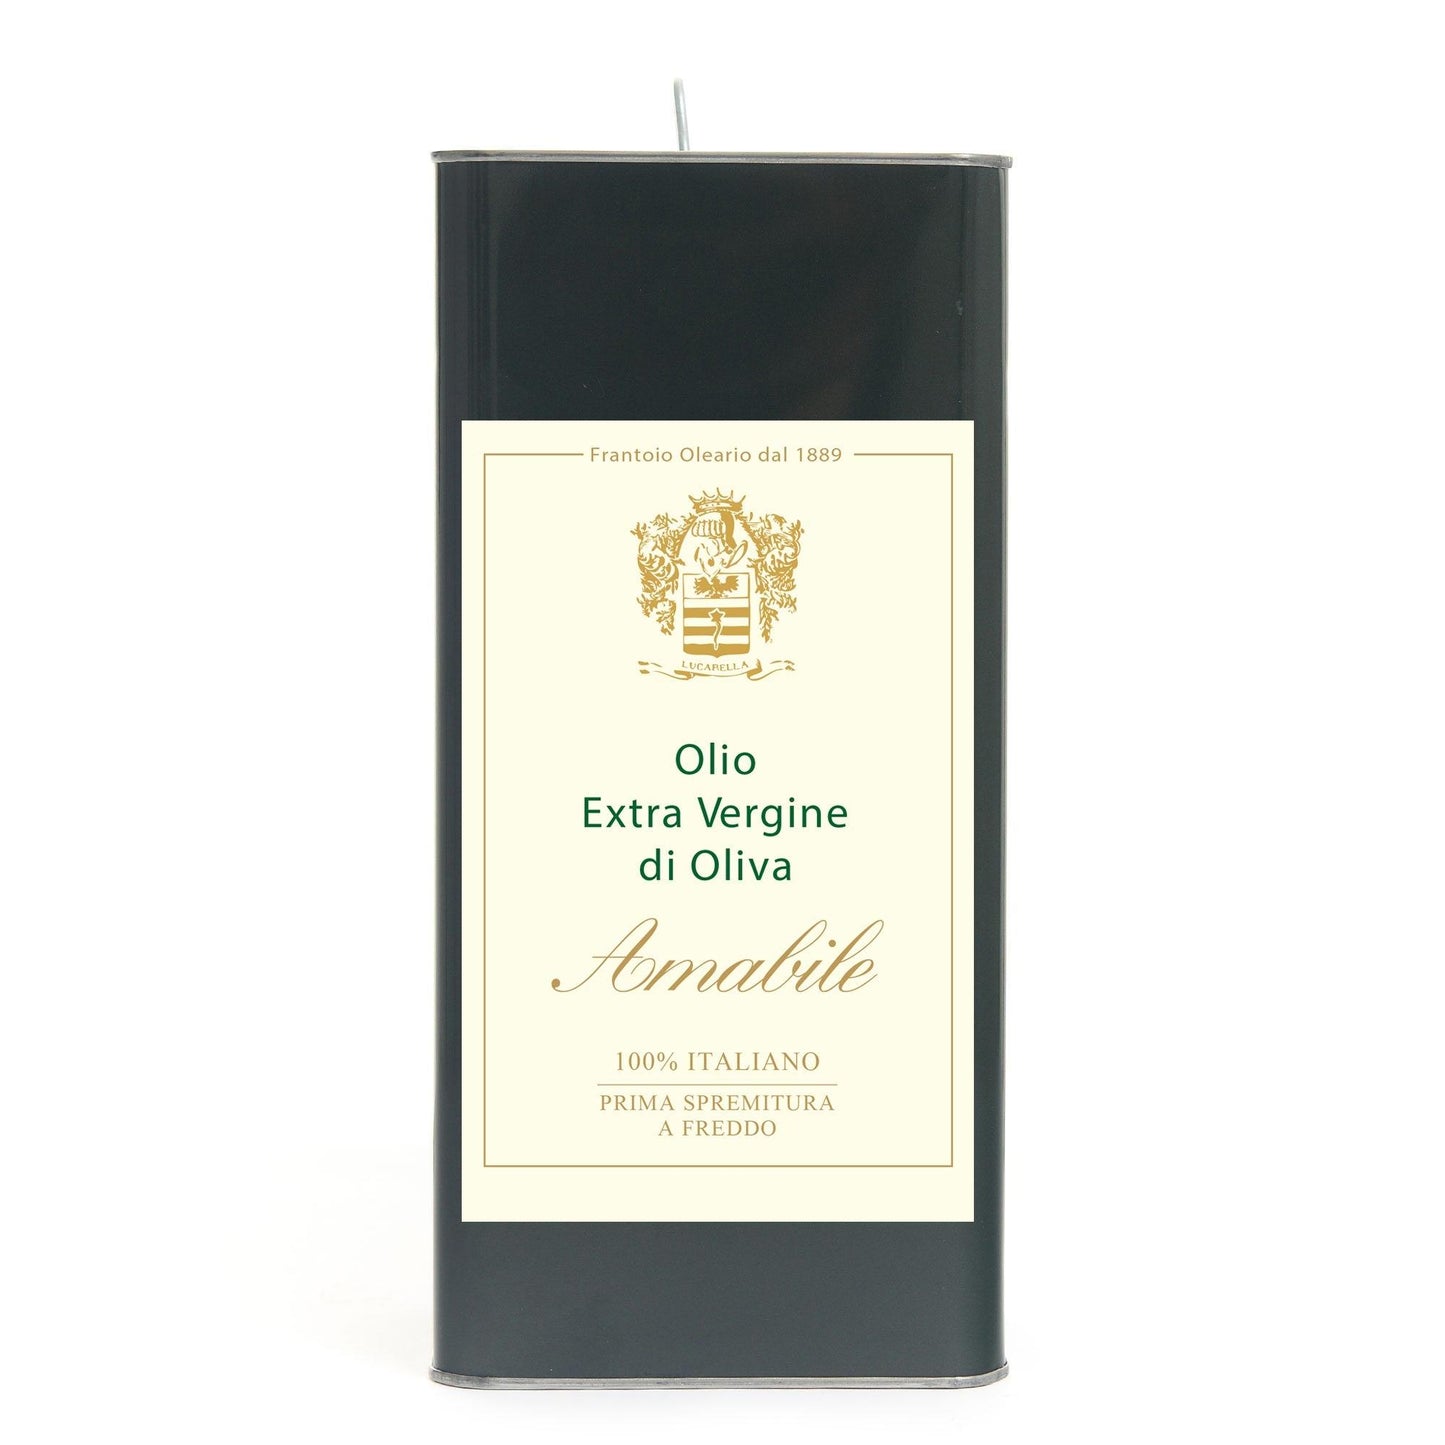 Lattina di Olio extravergine di oliva Amabile da 5 lt - L'Acropoli di Puglia